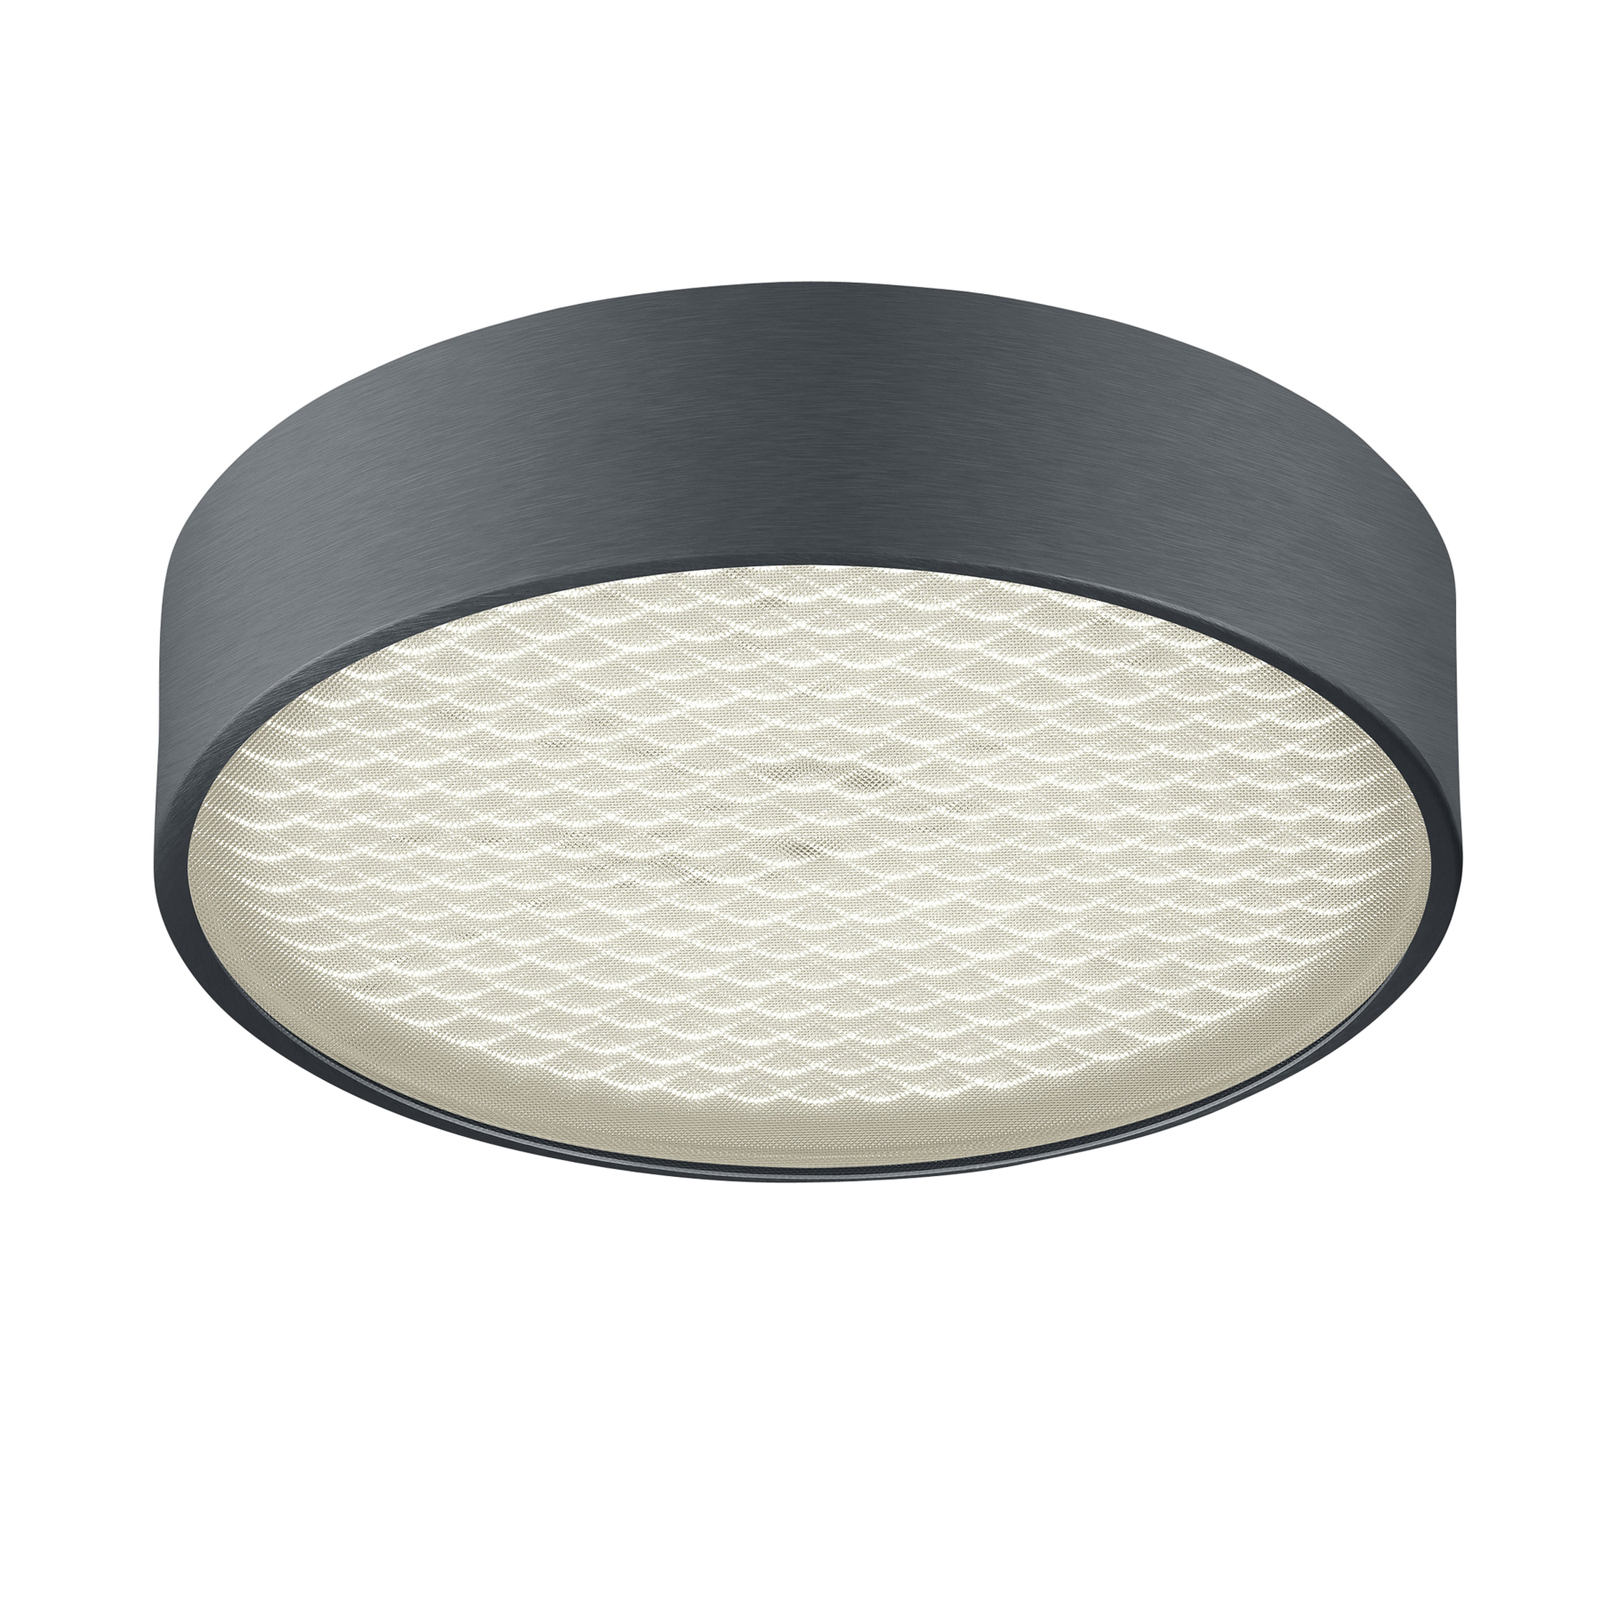 BANKAMP Drum LED-loftlampe, mat antracit